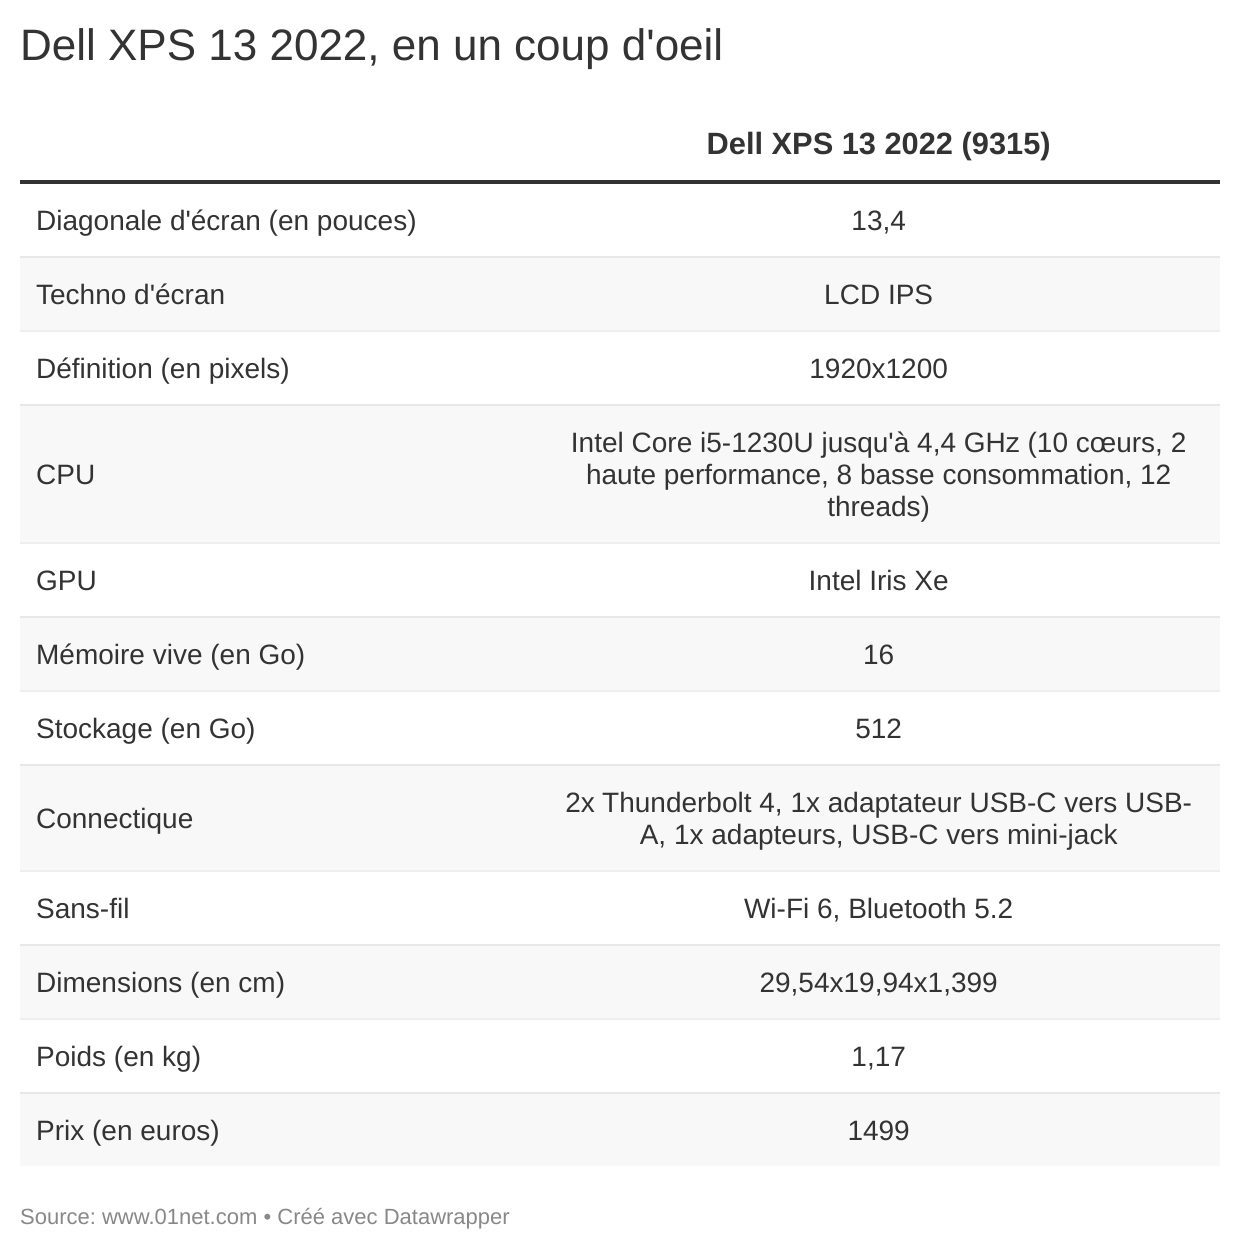 Le Dell XPS 13 2022 en un coup d'oeil.